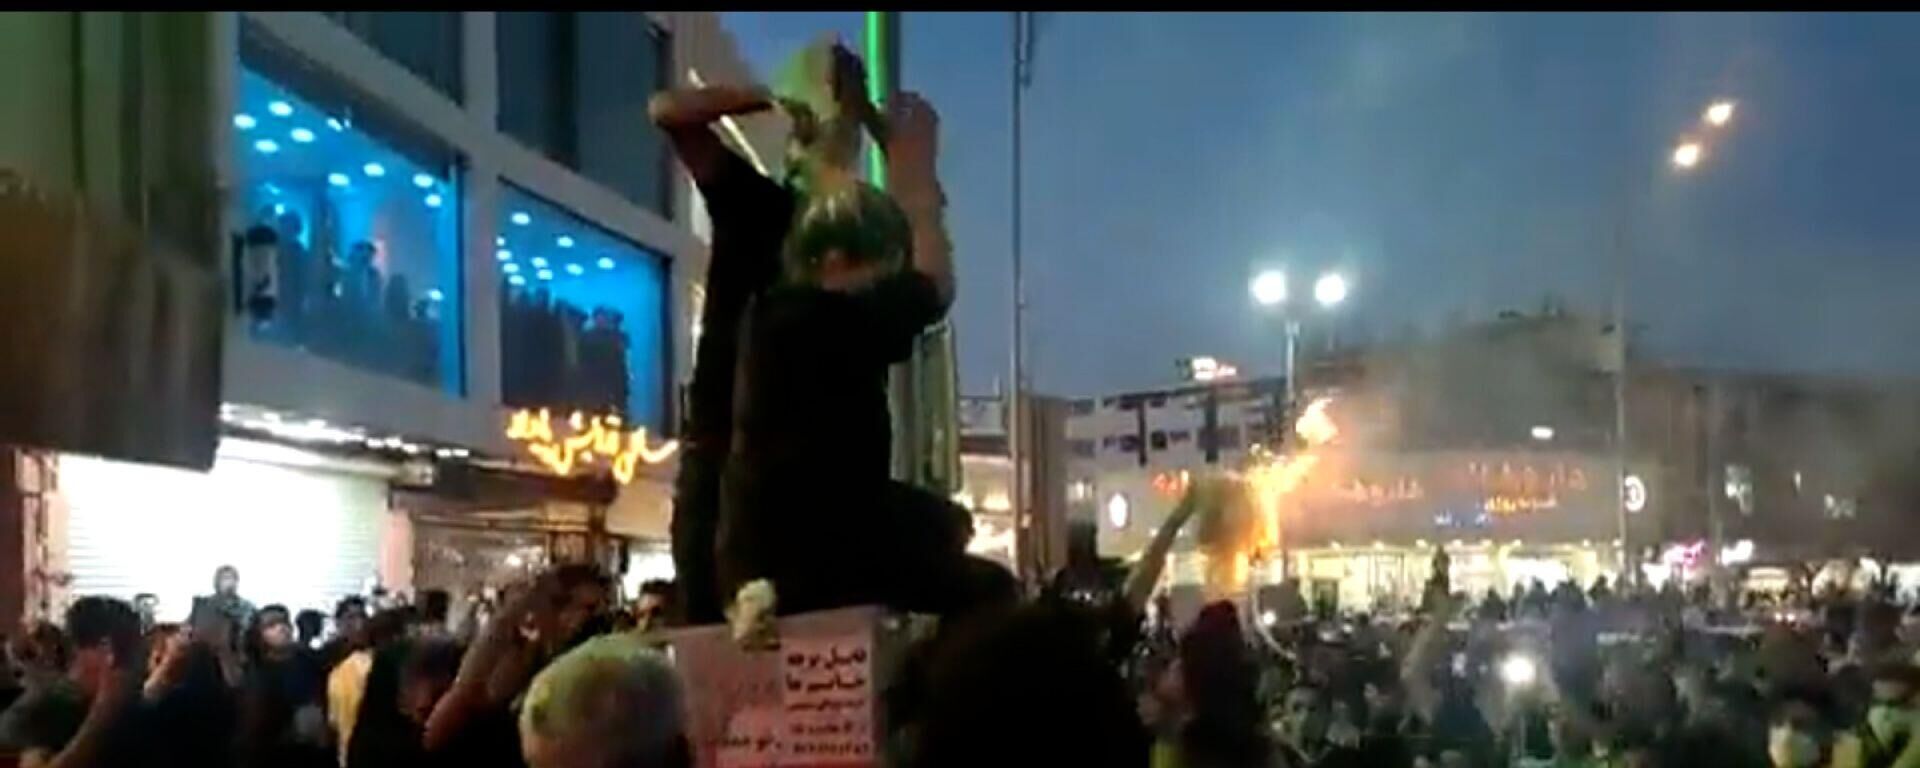 İran'da kadın protestocuların başörtülerini atıp saçlarını kestiği ya da dans ettiğine dair görüntüler, sosyal medyada viral oldu.  - Sputnik Türkiye, 1920, 21.09.2022